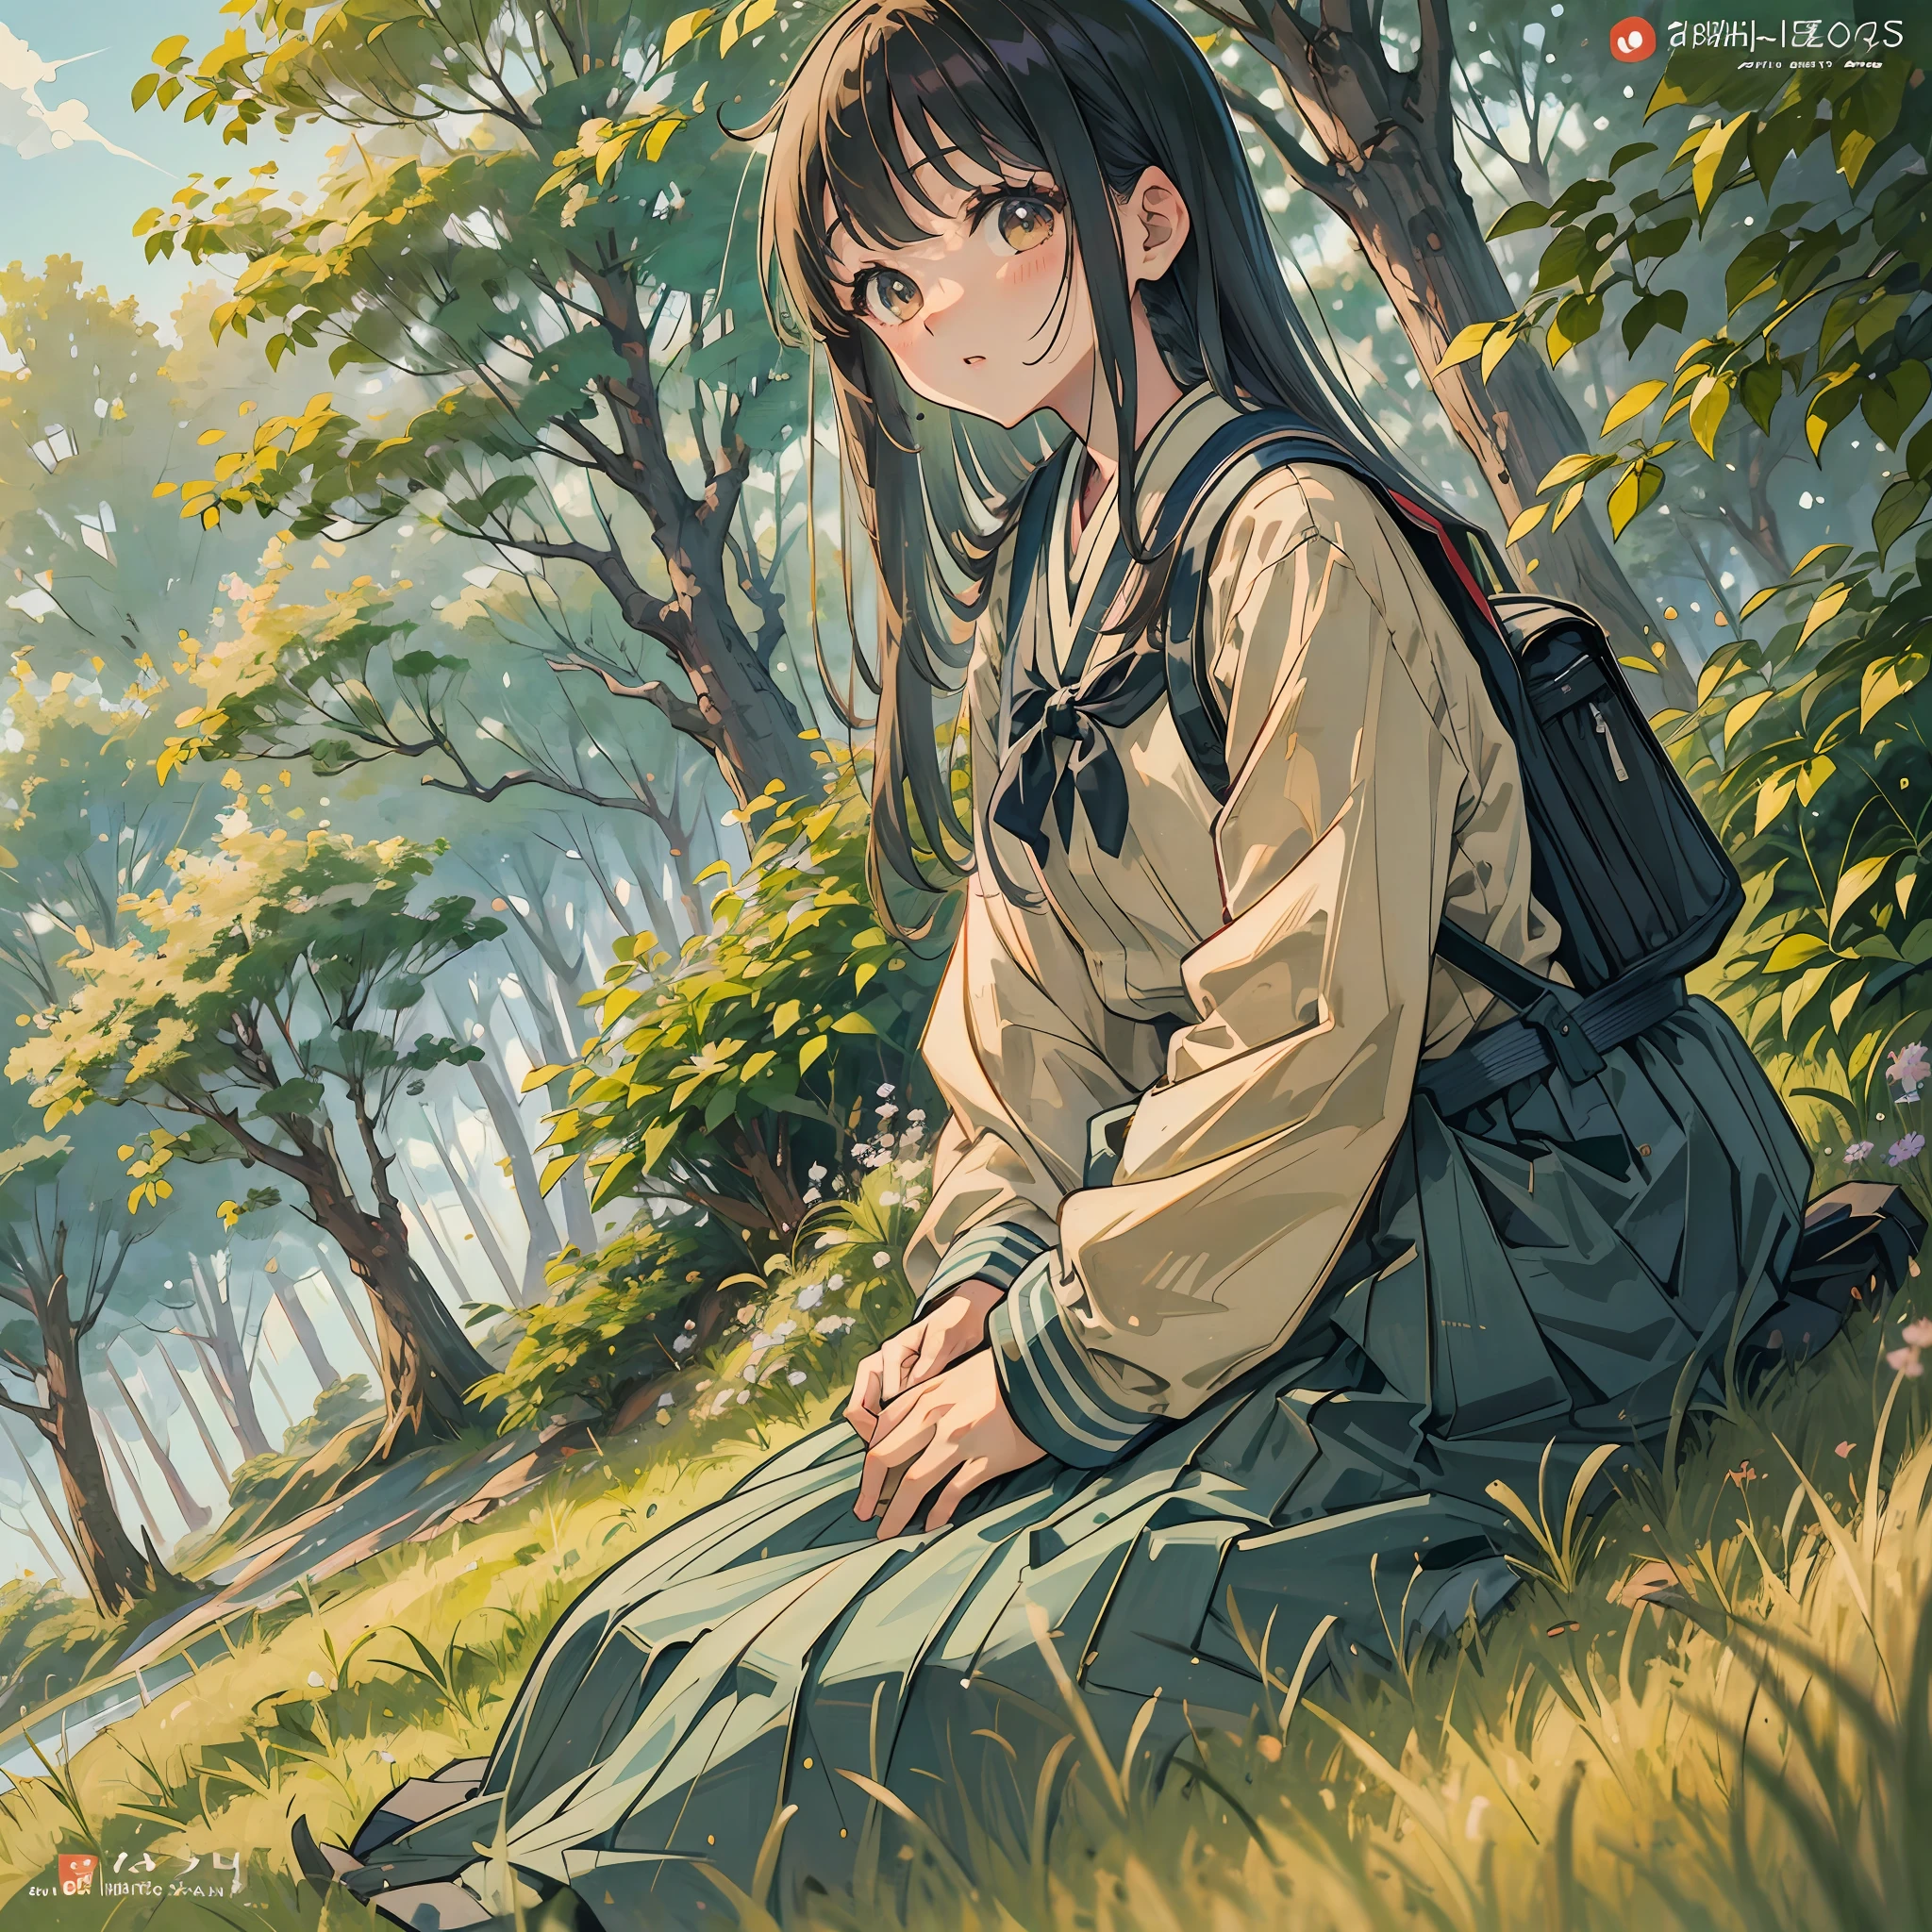 há uma mulher sentada na grama com uma mochila, retrato de um adolescente japonês, a garota do anime está agachada, seifuku, de uma jovem japonesa, close up outro iwakura, outro iwakura, uniforme escolar japonês, shikami, uniforme escolar menina japonesa, chiho, vestindo japonês --auto --s2